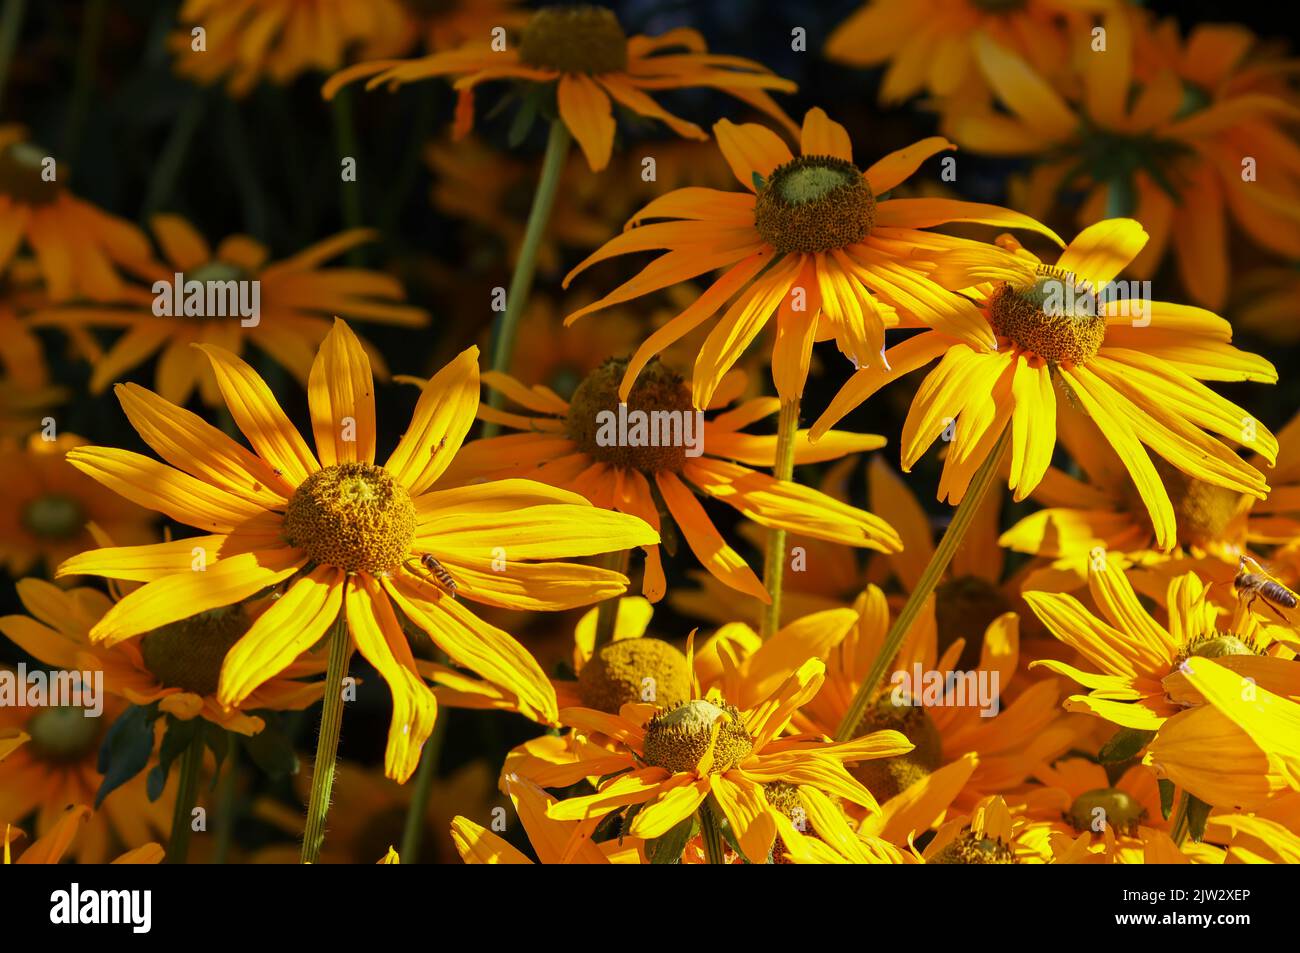 Des fleurs jaunes vives, 'Rudbeckia hirta', 'Irish Eyes' ou 'Black Eyed Susan' fleurissent à la fin de l'été sous une lumière ébouriélée. Dublin, Irlande Banque D'Images